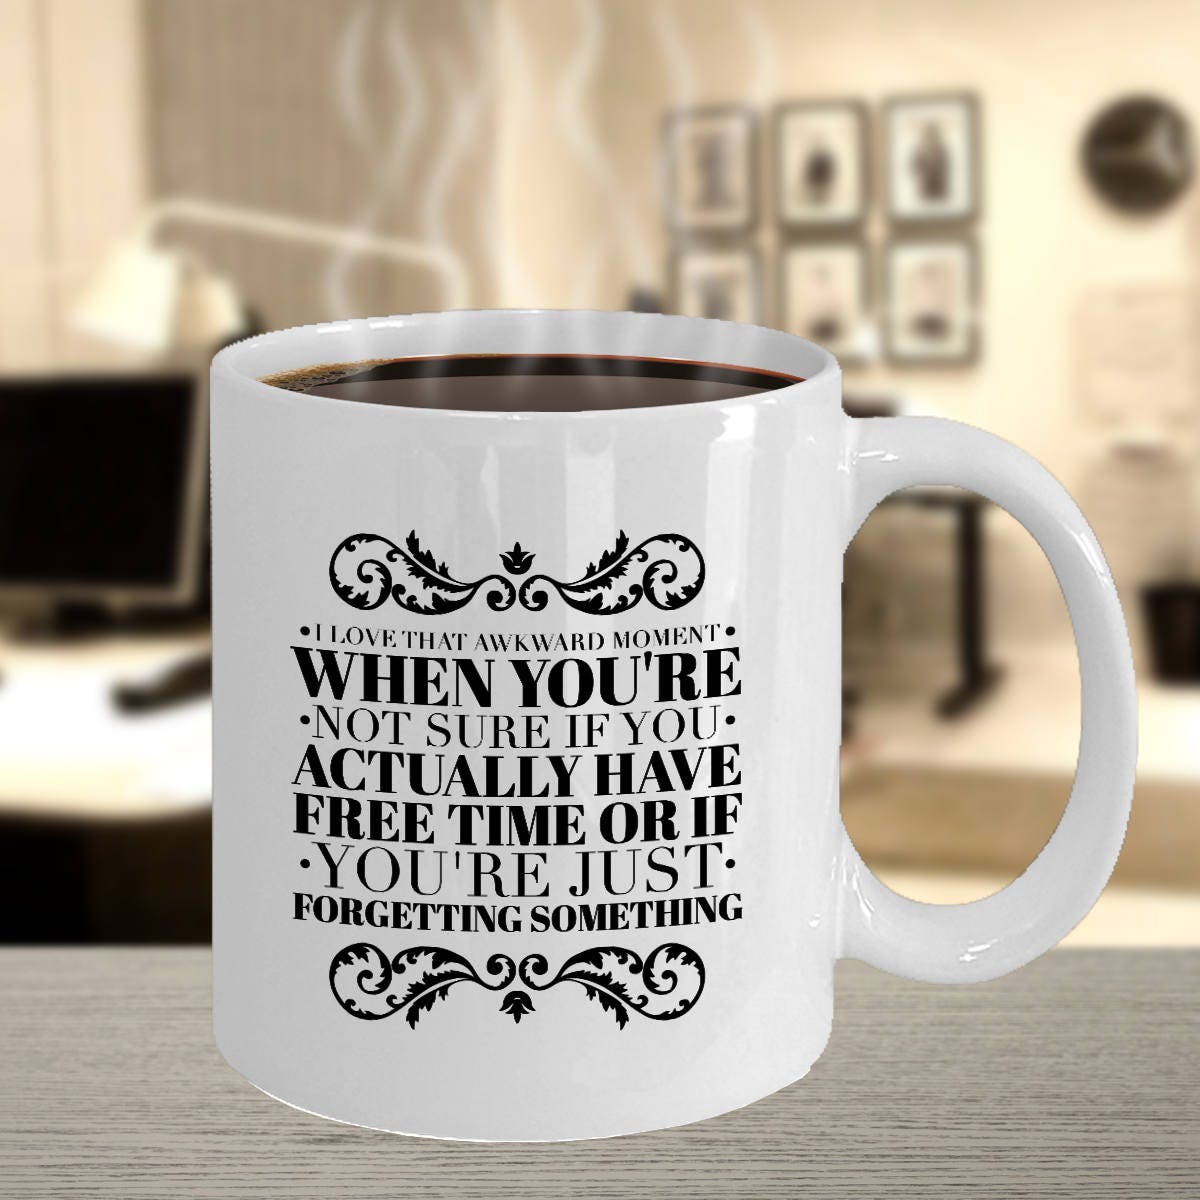 Coffee Mug Funny Sayings Humorous Coffee Mugs Funny Mug | Etsy